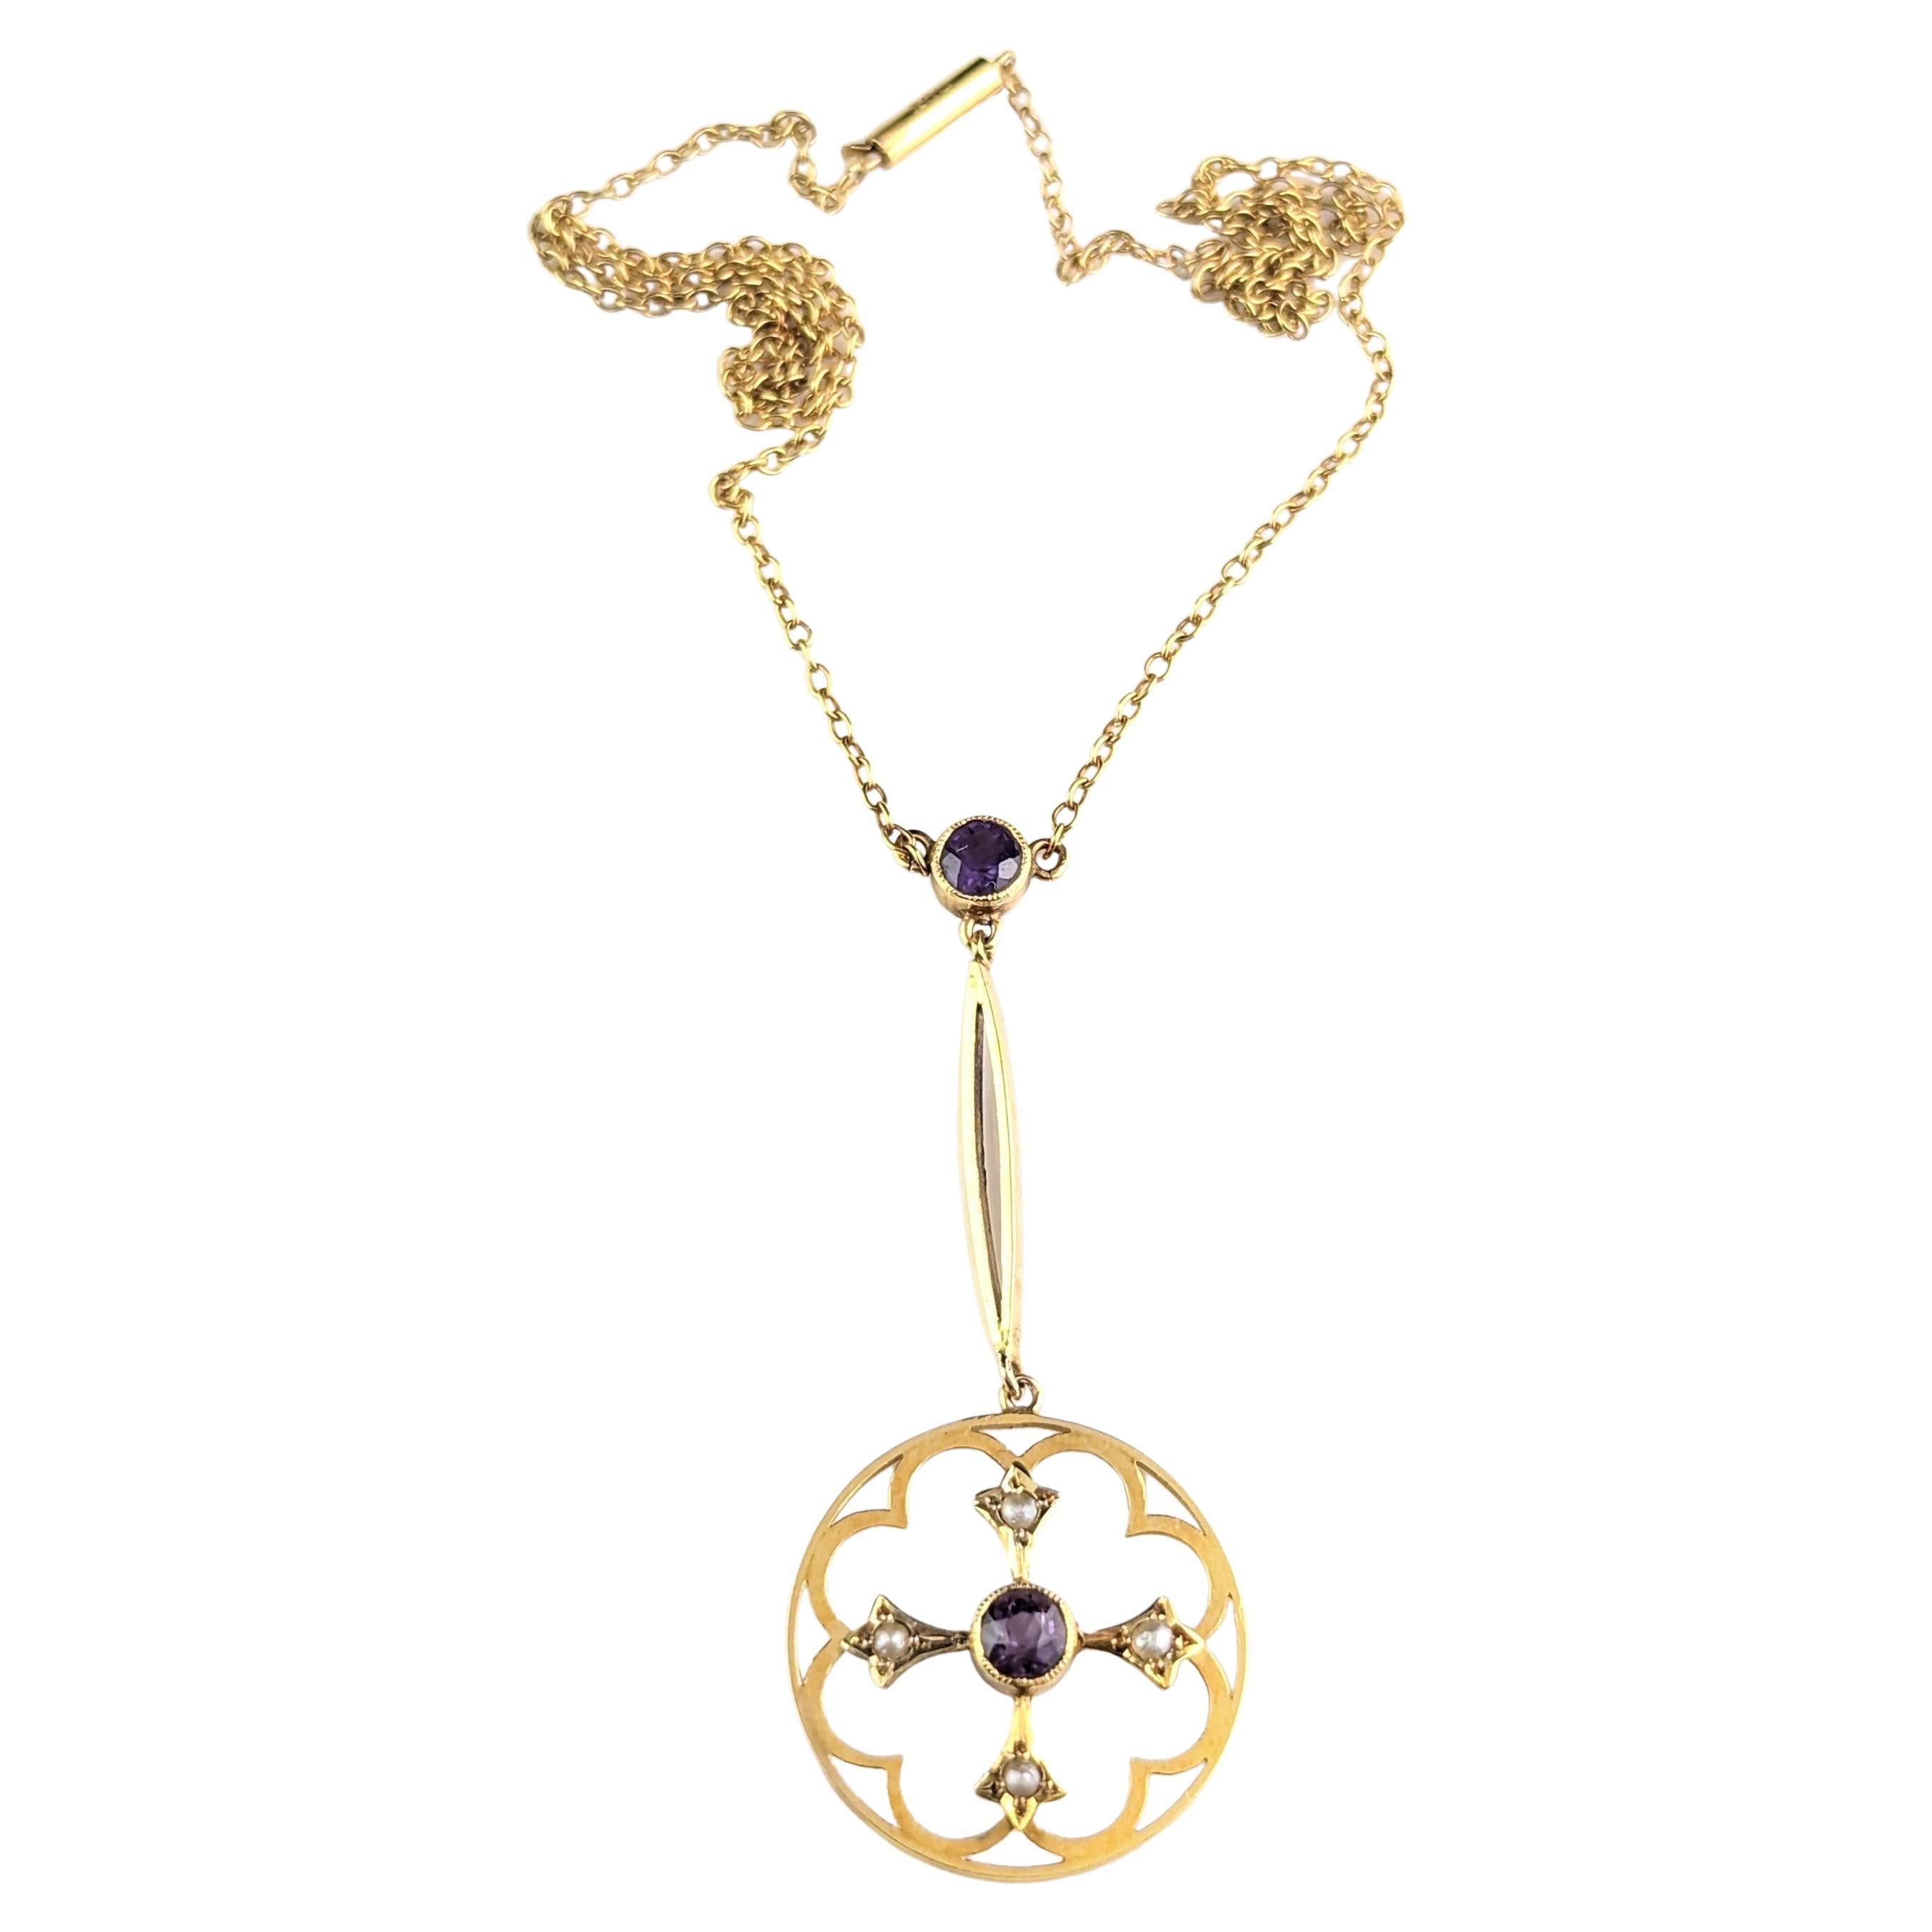 Antique Art Nouveau Pendant Necklace, Amethyst and Pearl, 9 Karat Gold  For Sale